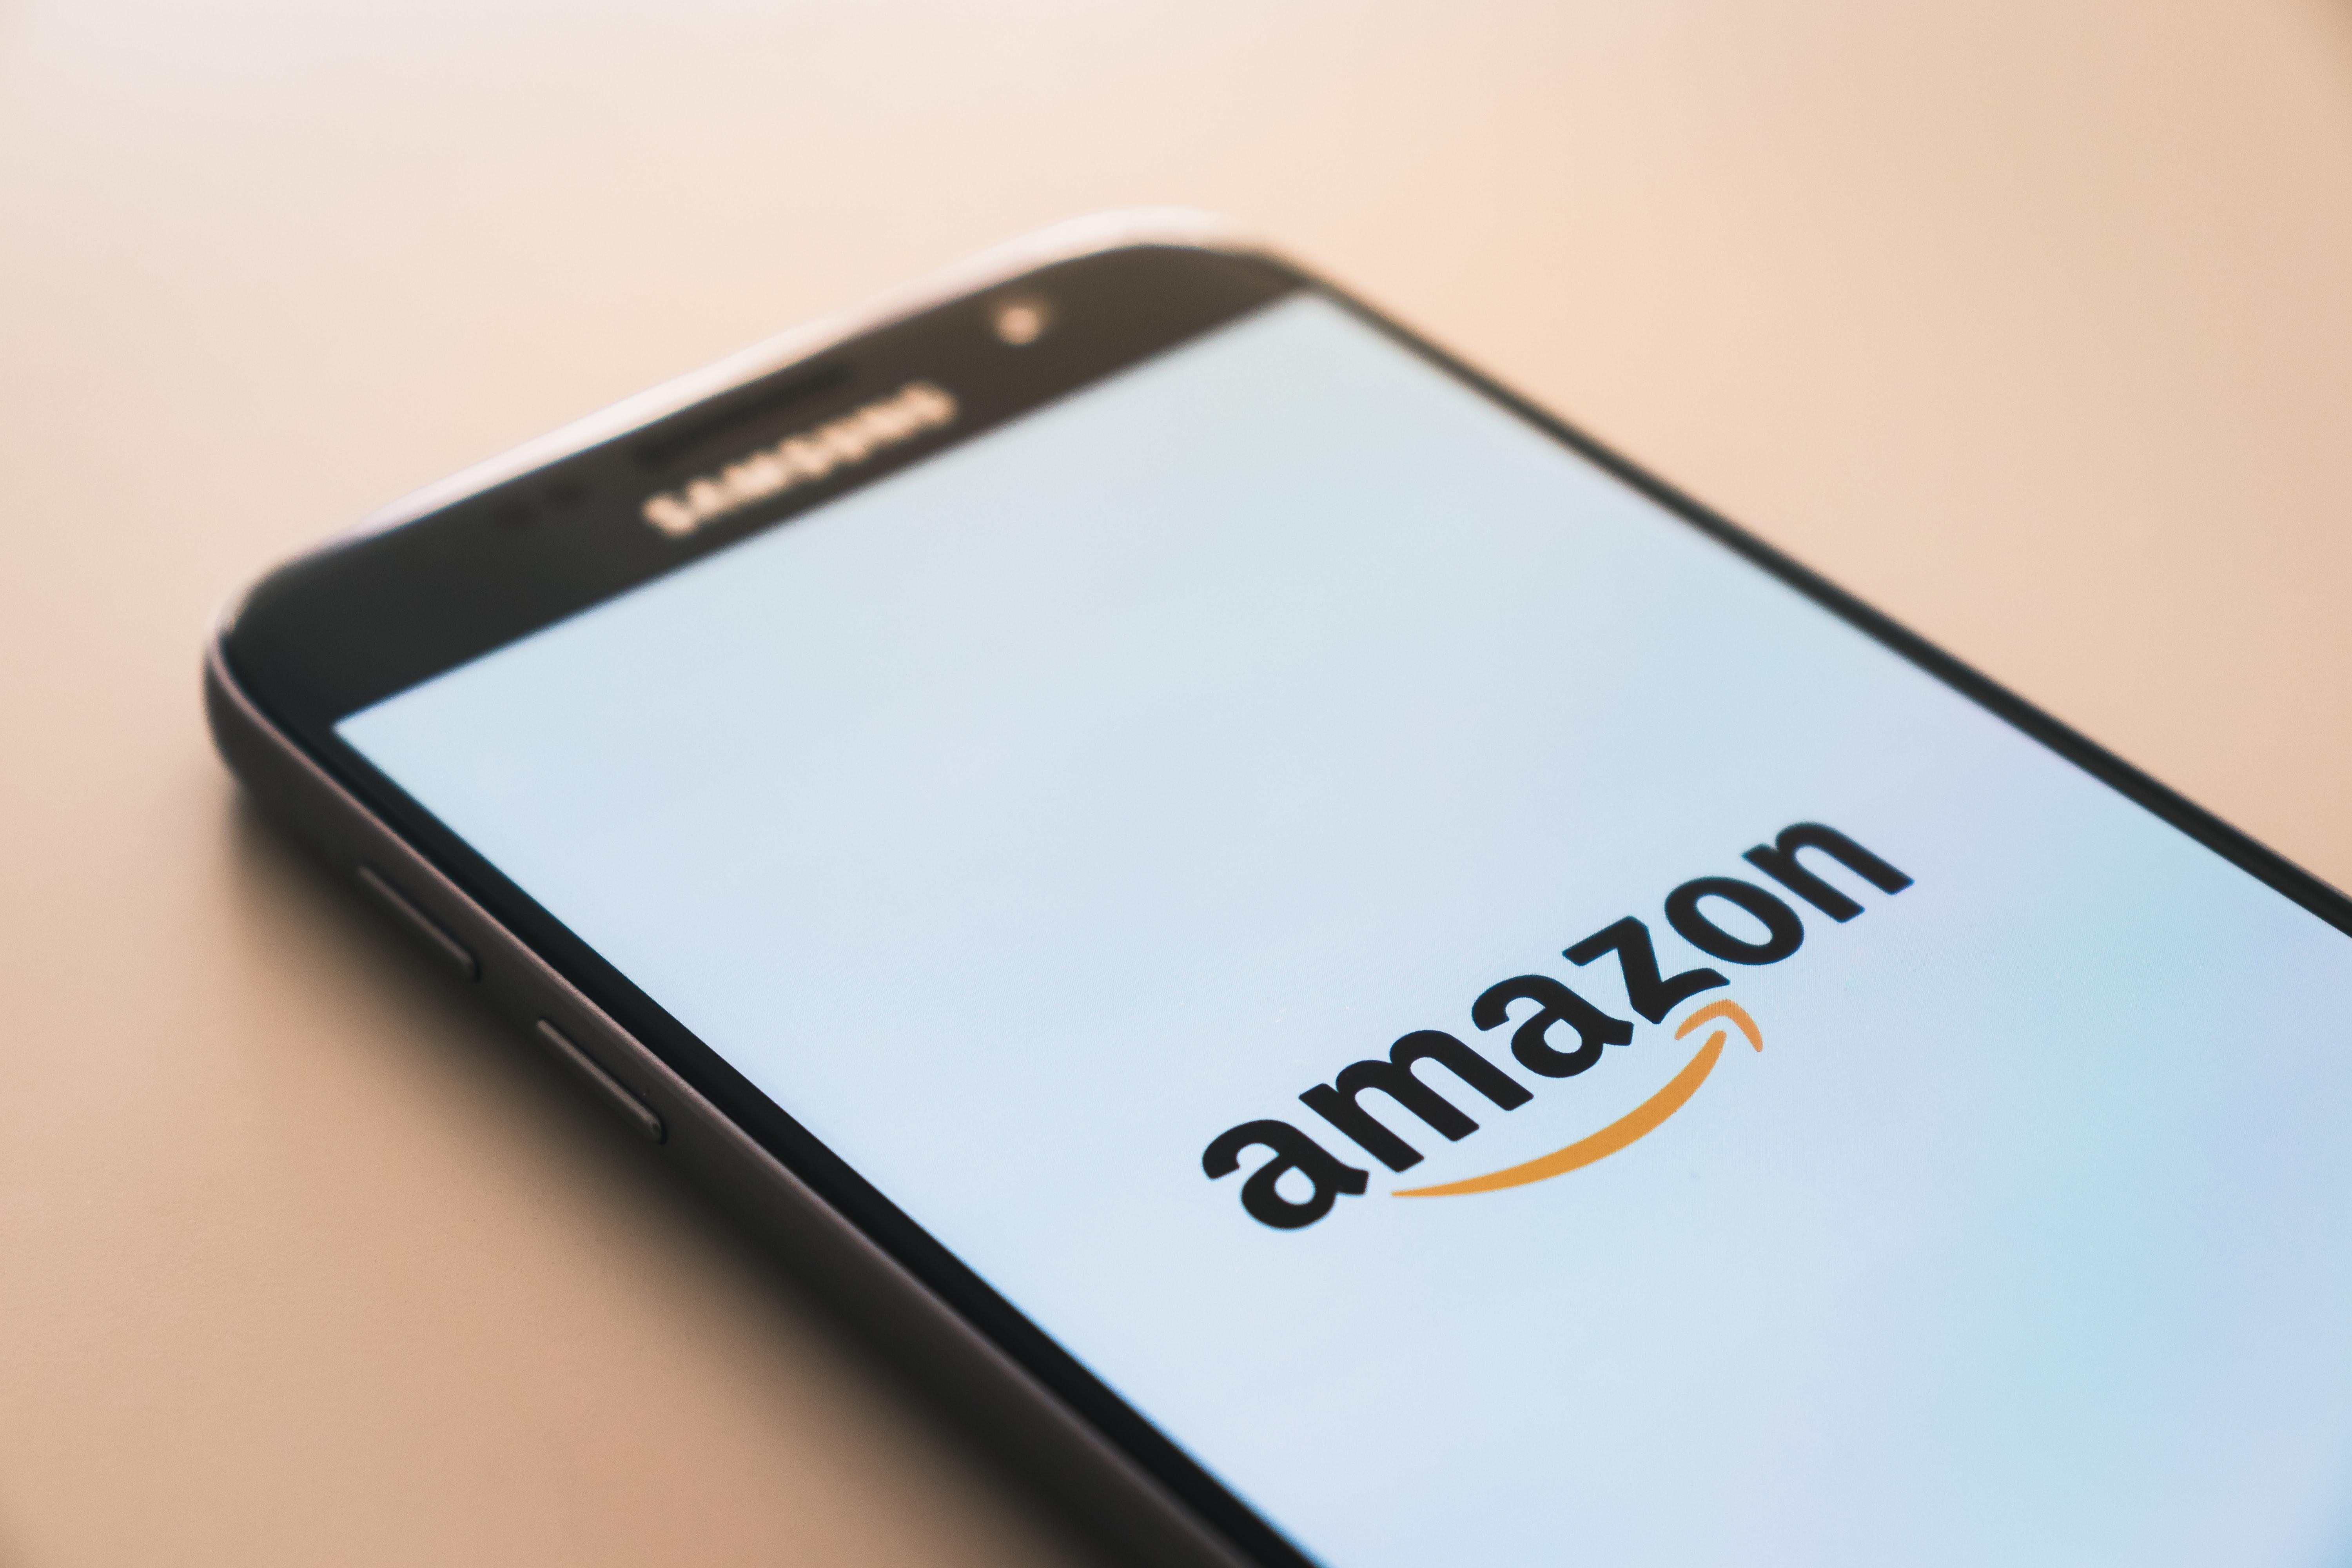 Шахраї викрали 27 мільйонів доларів у клієнтів Amazon: як їм це вдалося - Бізнес